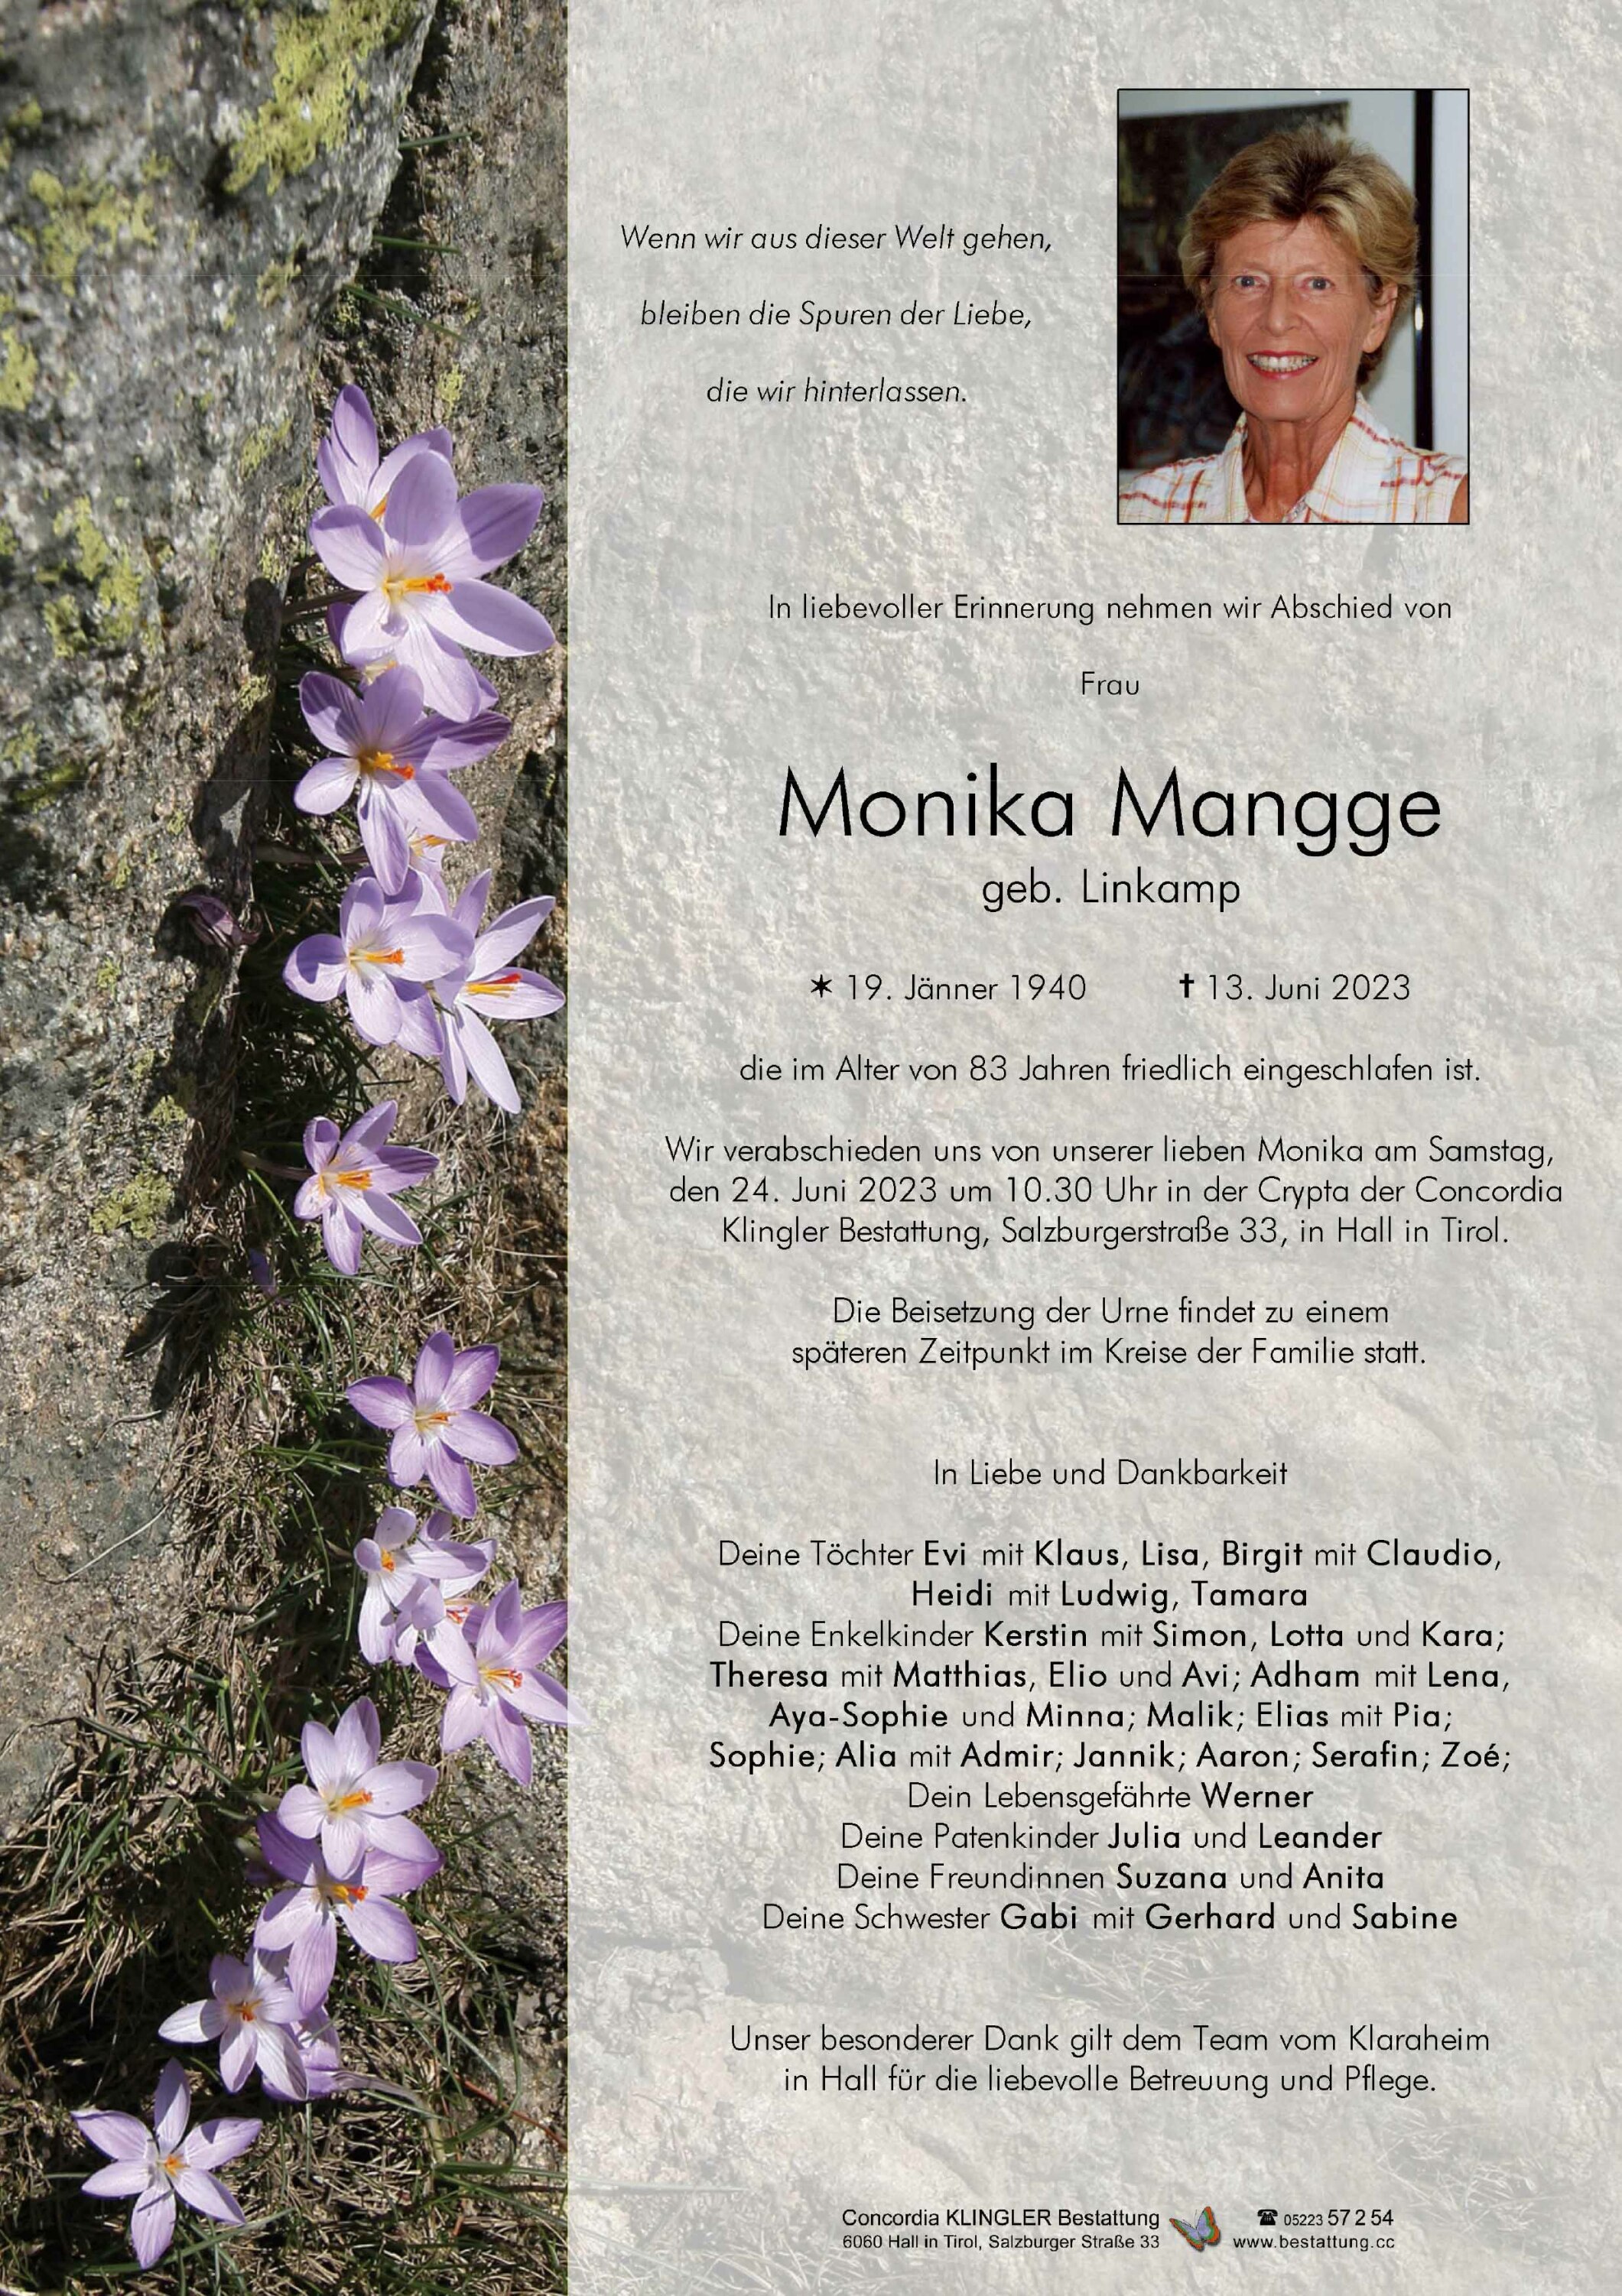 Monika Mangge